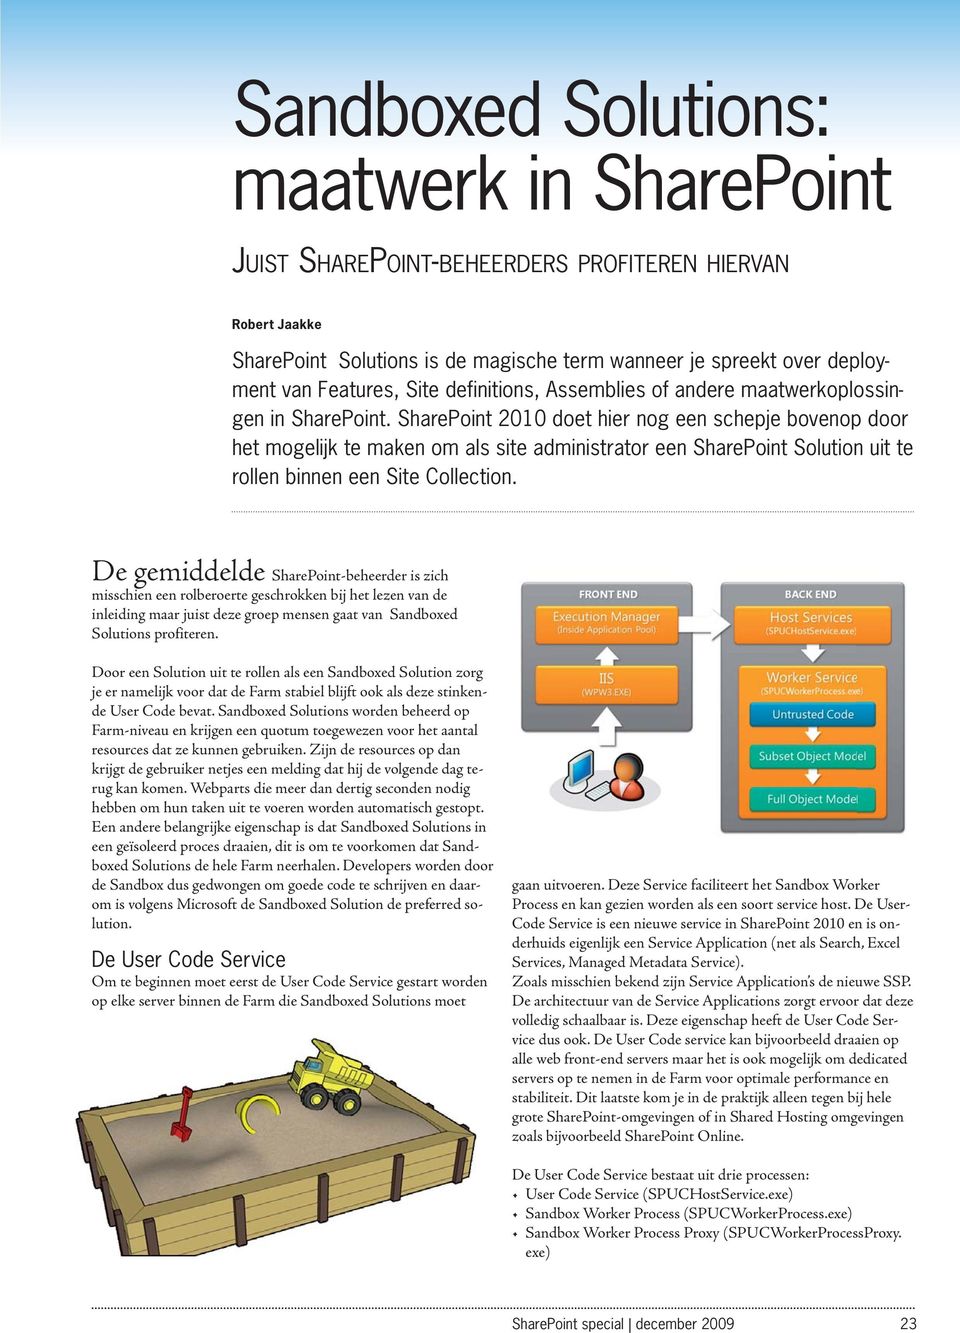 SharePoint 2010 doet hier nog een schepje bovenop door het mogelijk te maken om als site administrator een SharePoint Solution uit te rollen binnen een Site Collection.